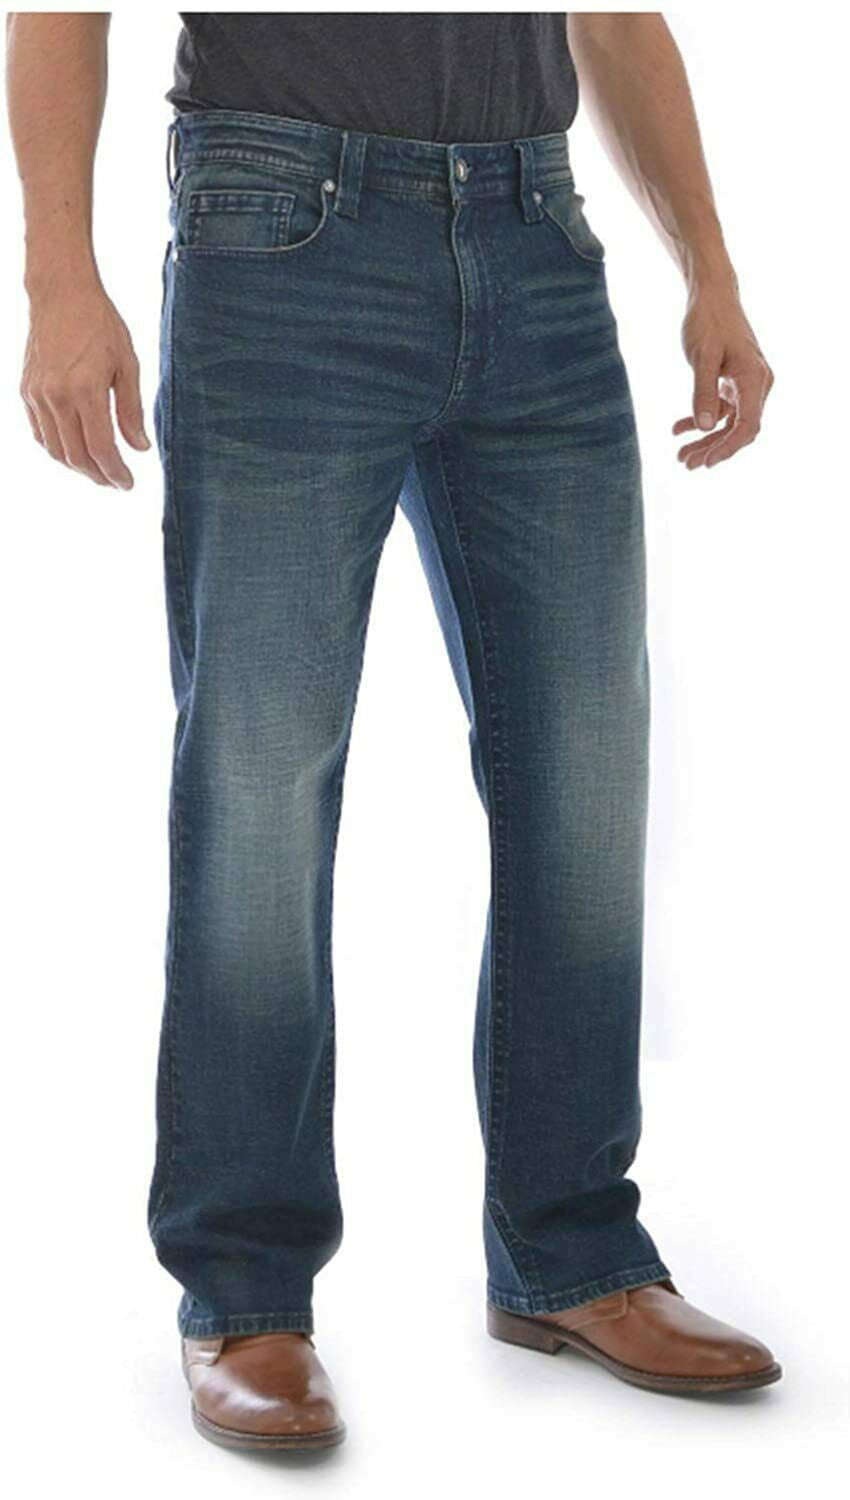 T.K Axel Men's Slim Boot Cut Jeans in Bushnell, Size 38 x 30 - Walmart.com